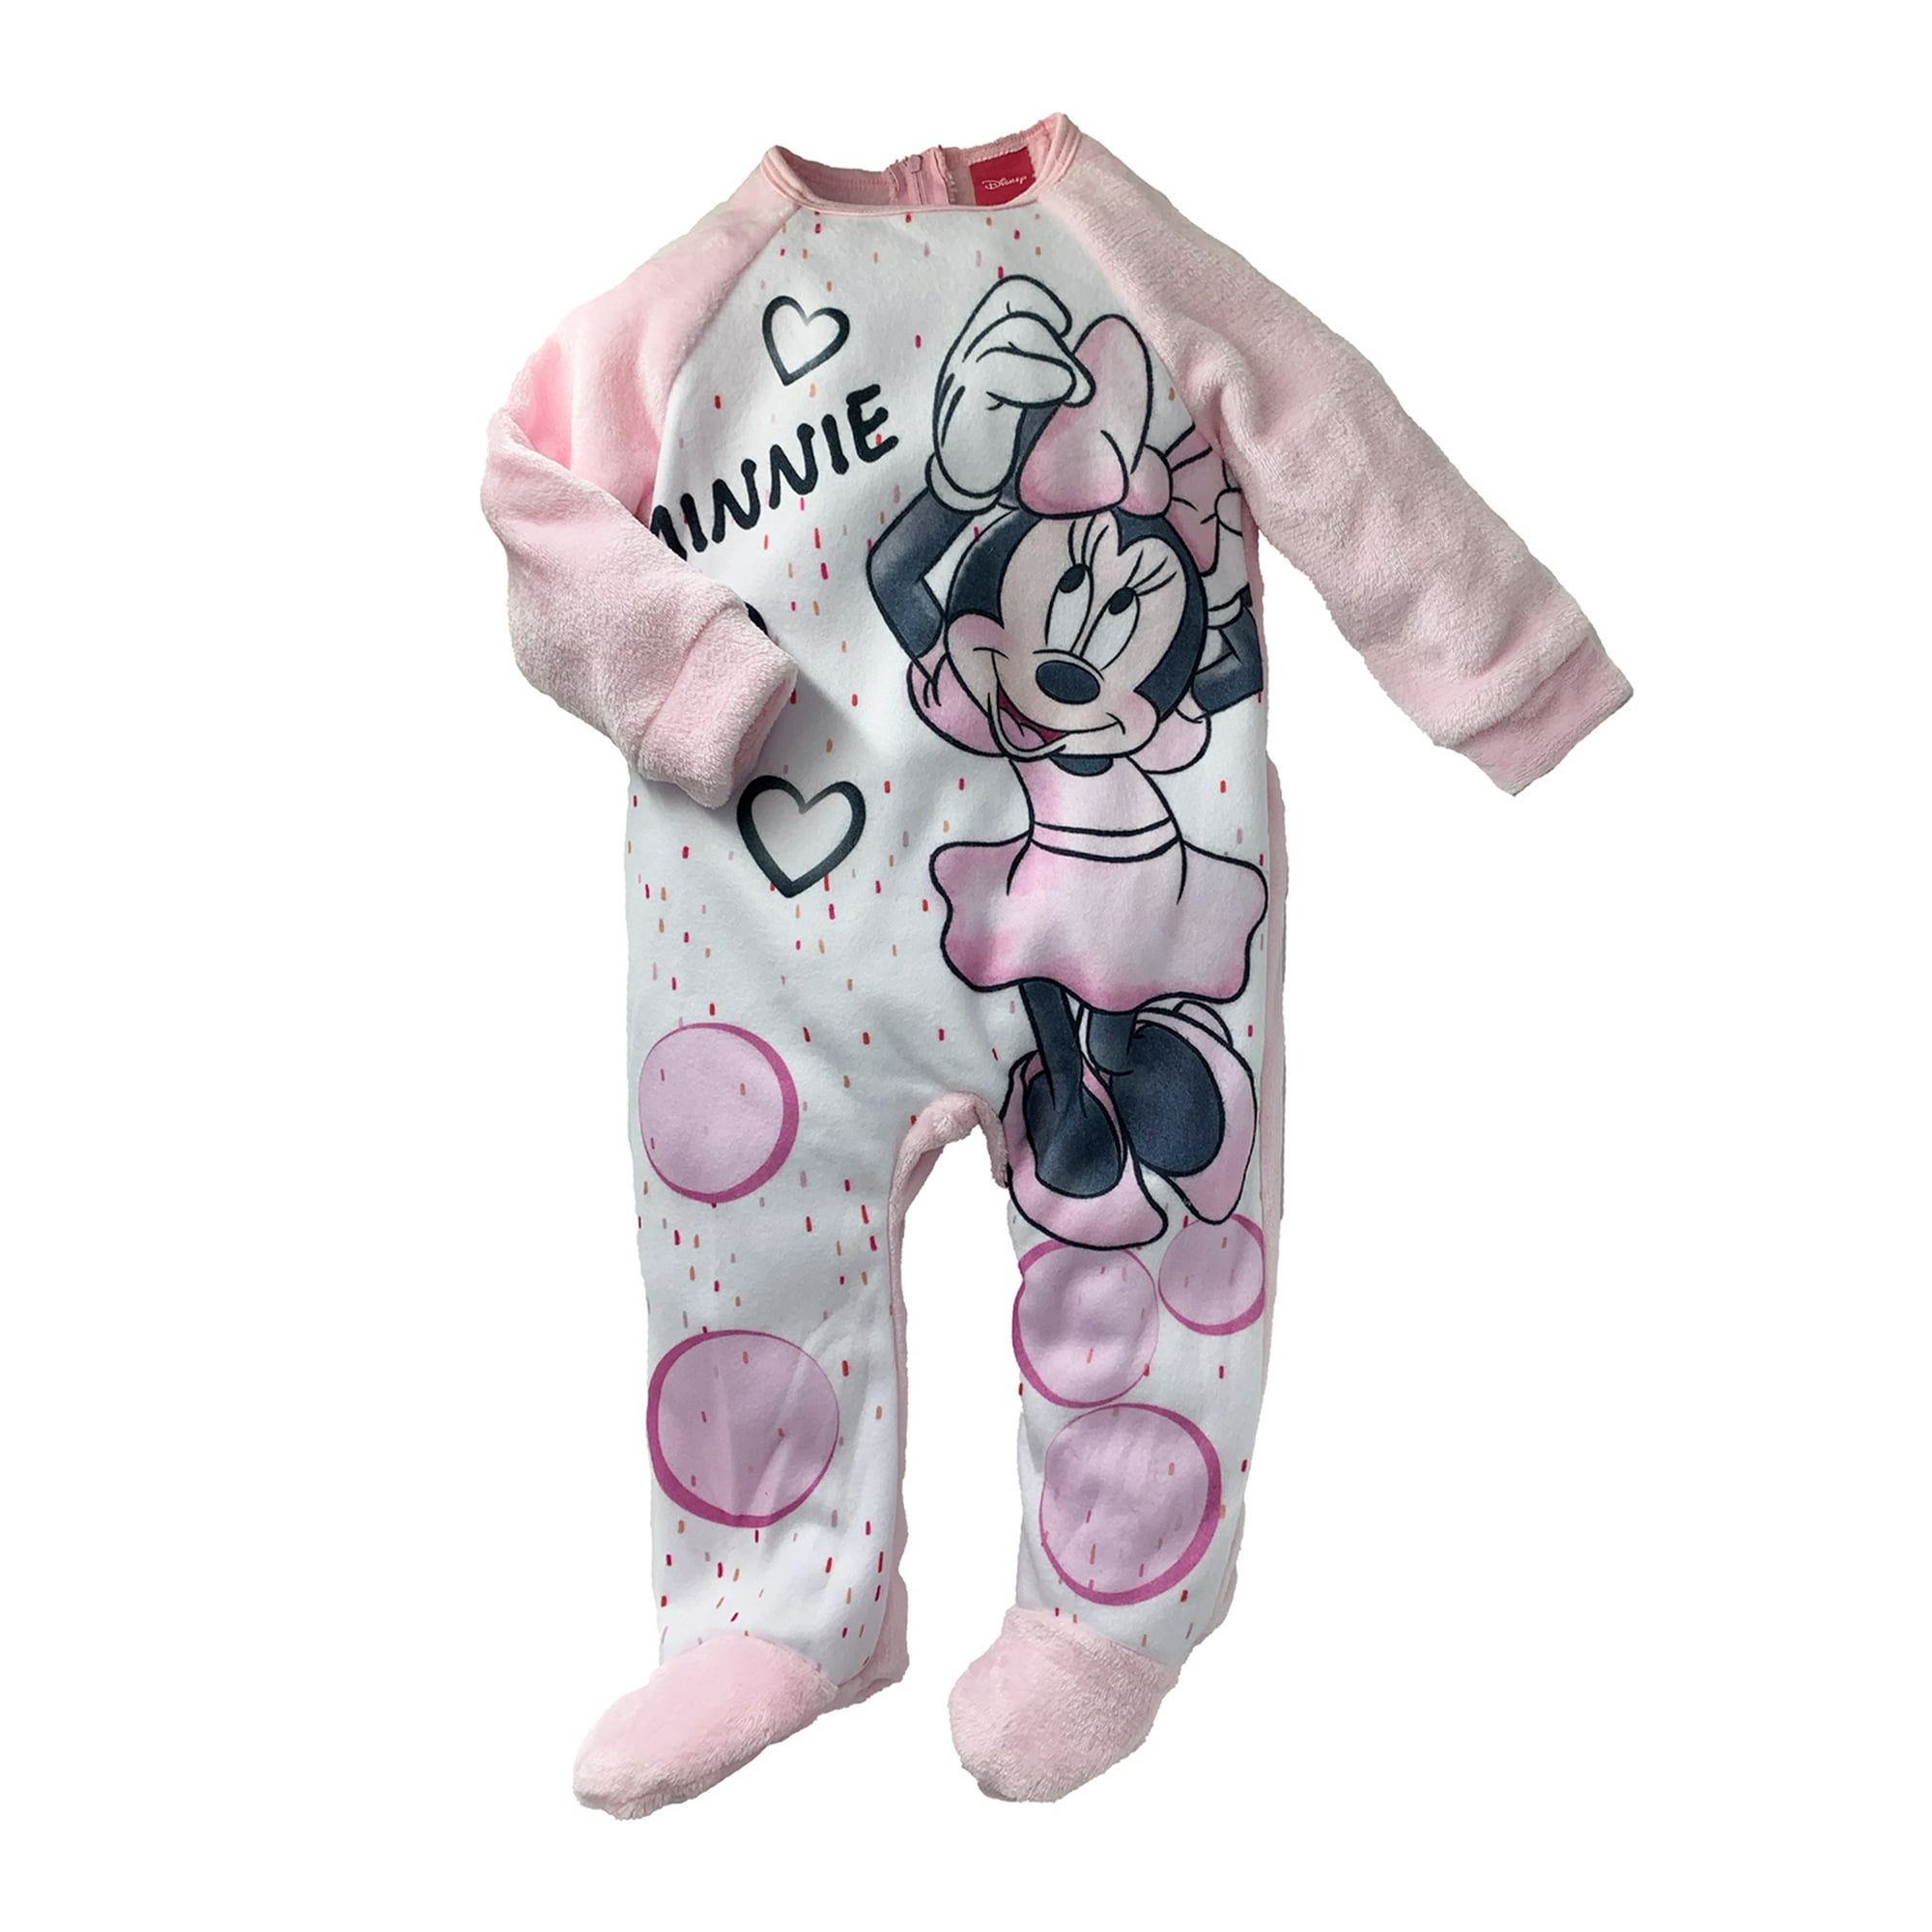  Disney Mameluco Stitch, Mameluco para niñas de Lilo y Stitch, Pijama Sitch Girls